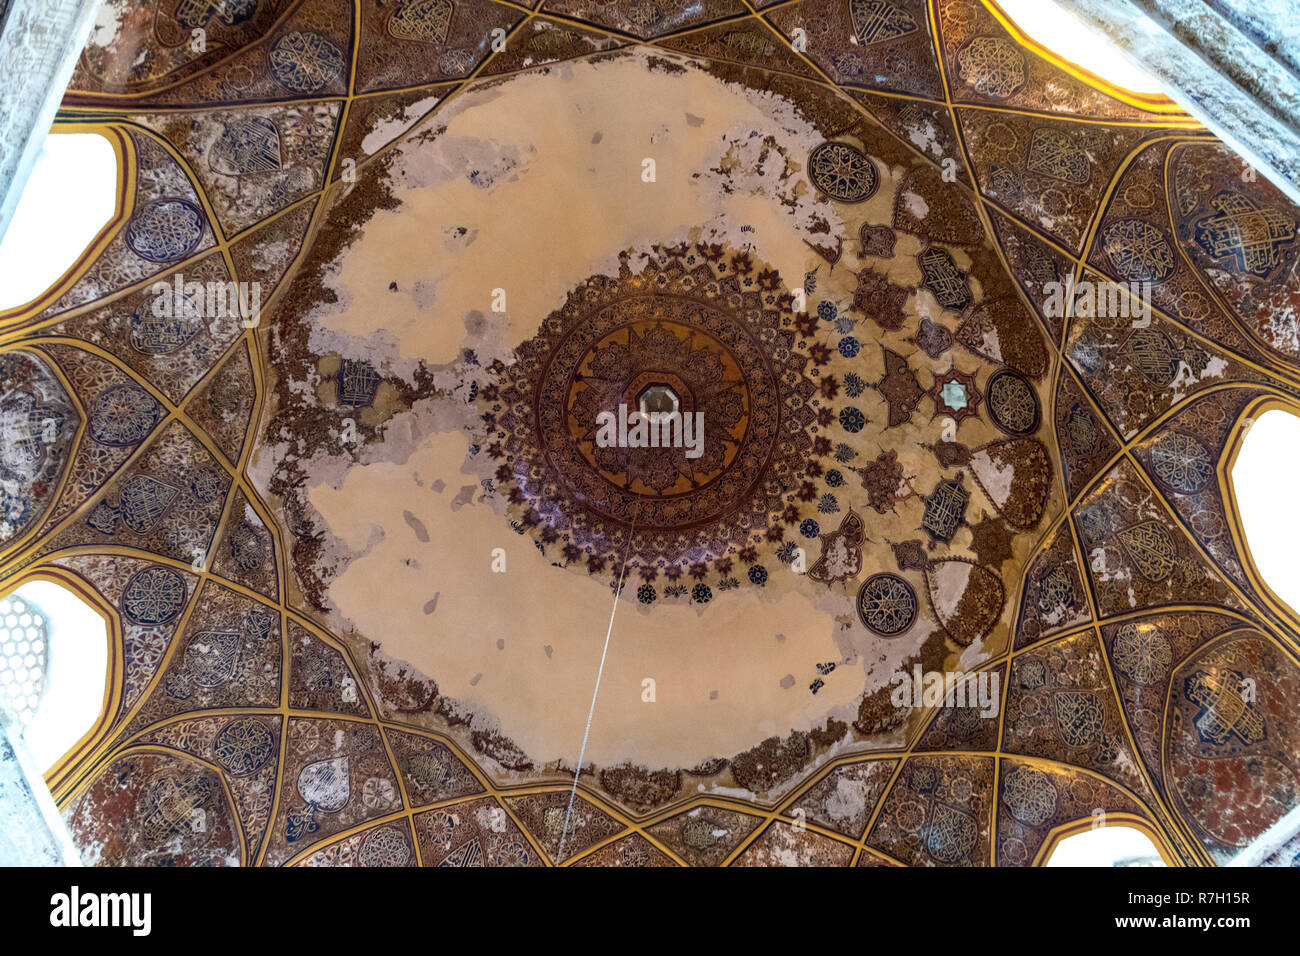 Le dôme intérieur Shahzada Abdullah culte, Herat, province de Herat, Afghanistan Banque D'Images